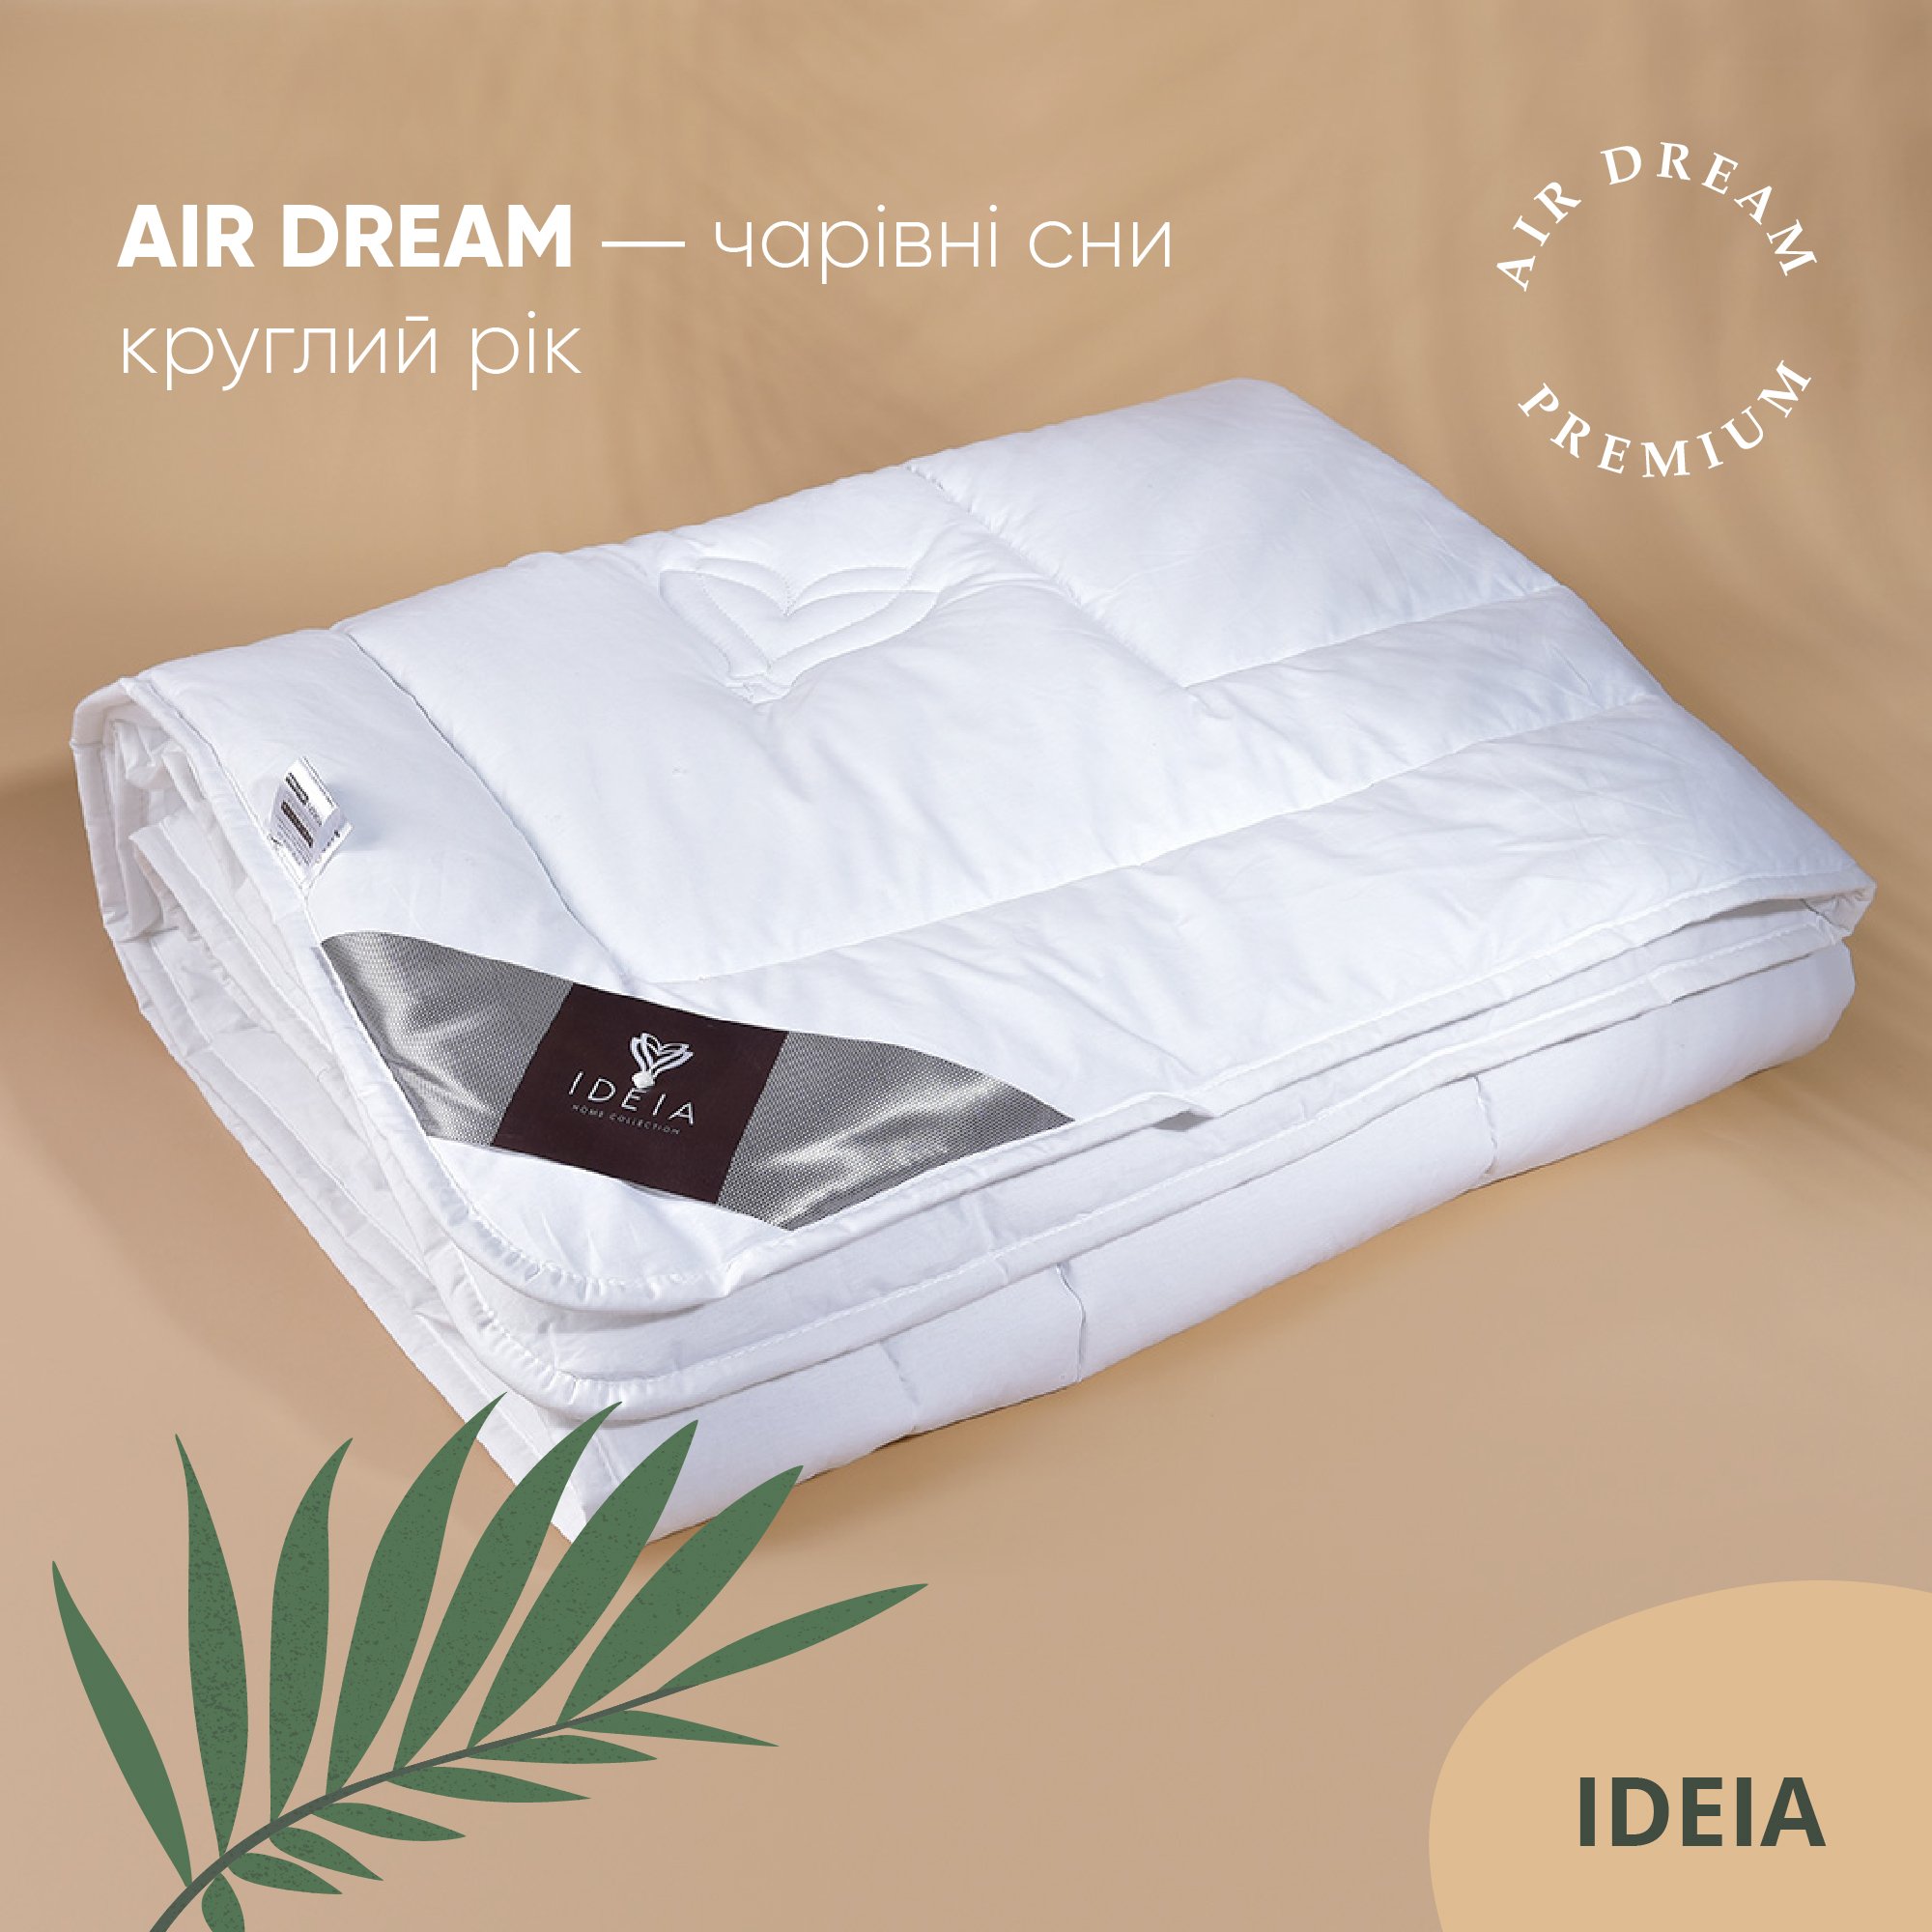 Ковдра Ideia Air Dream Premium зимова, 220х200, білий (8-11699) - фото 5